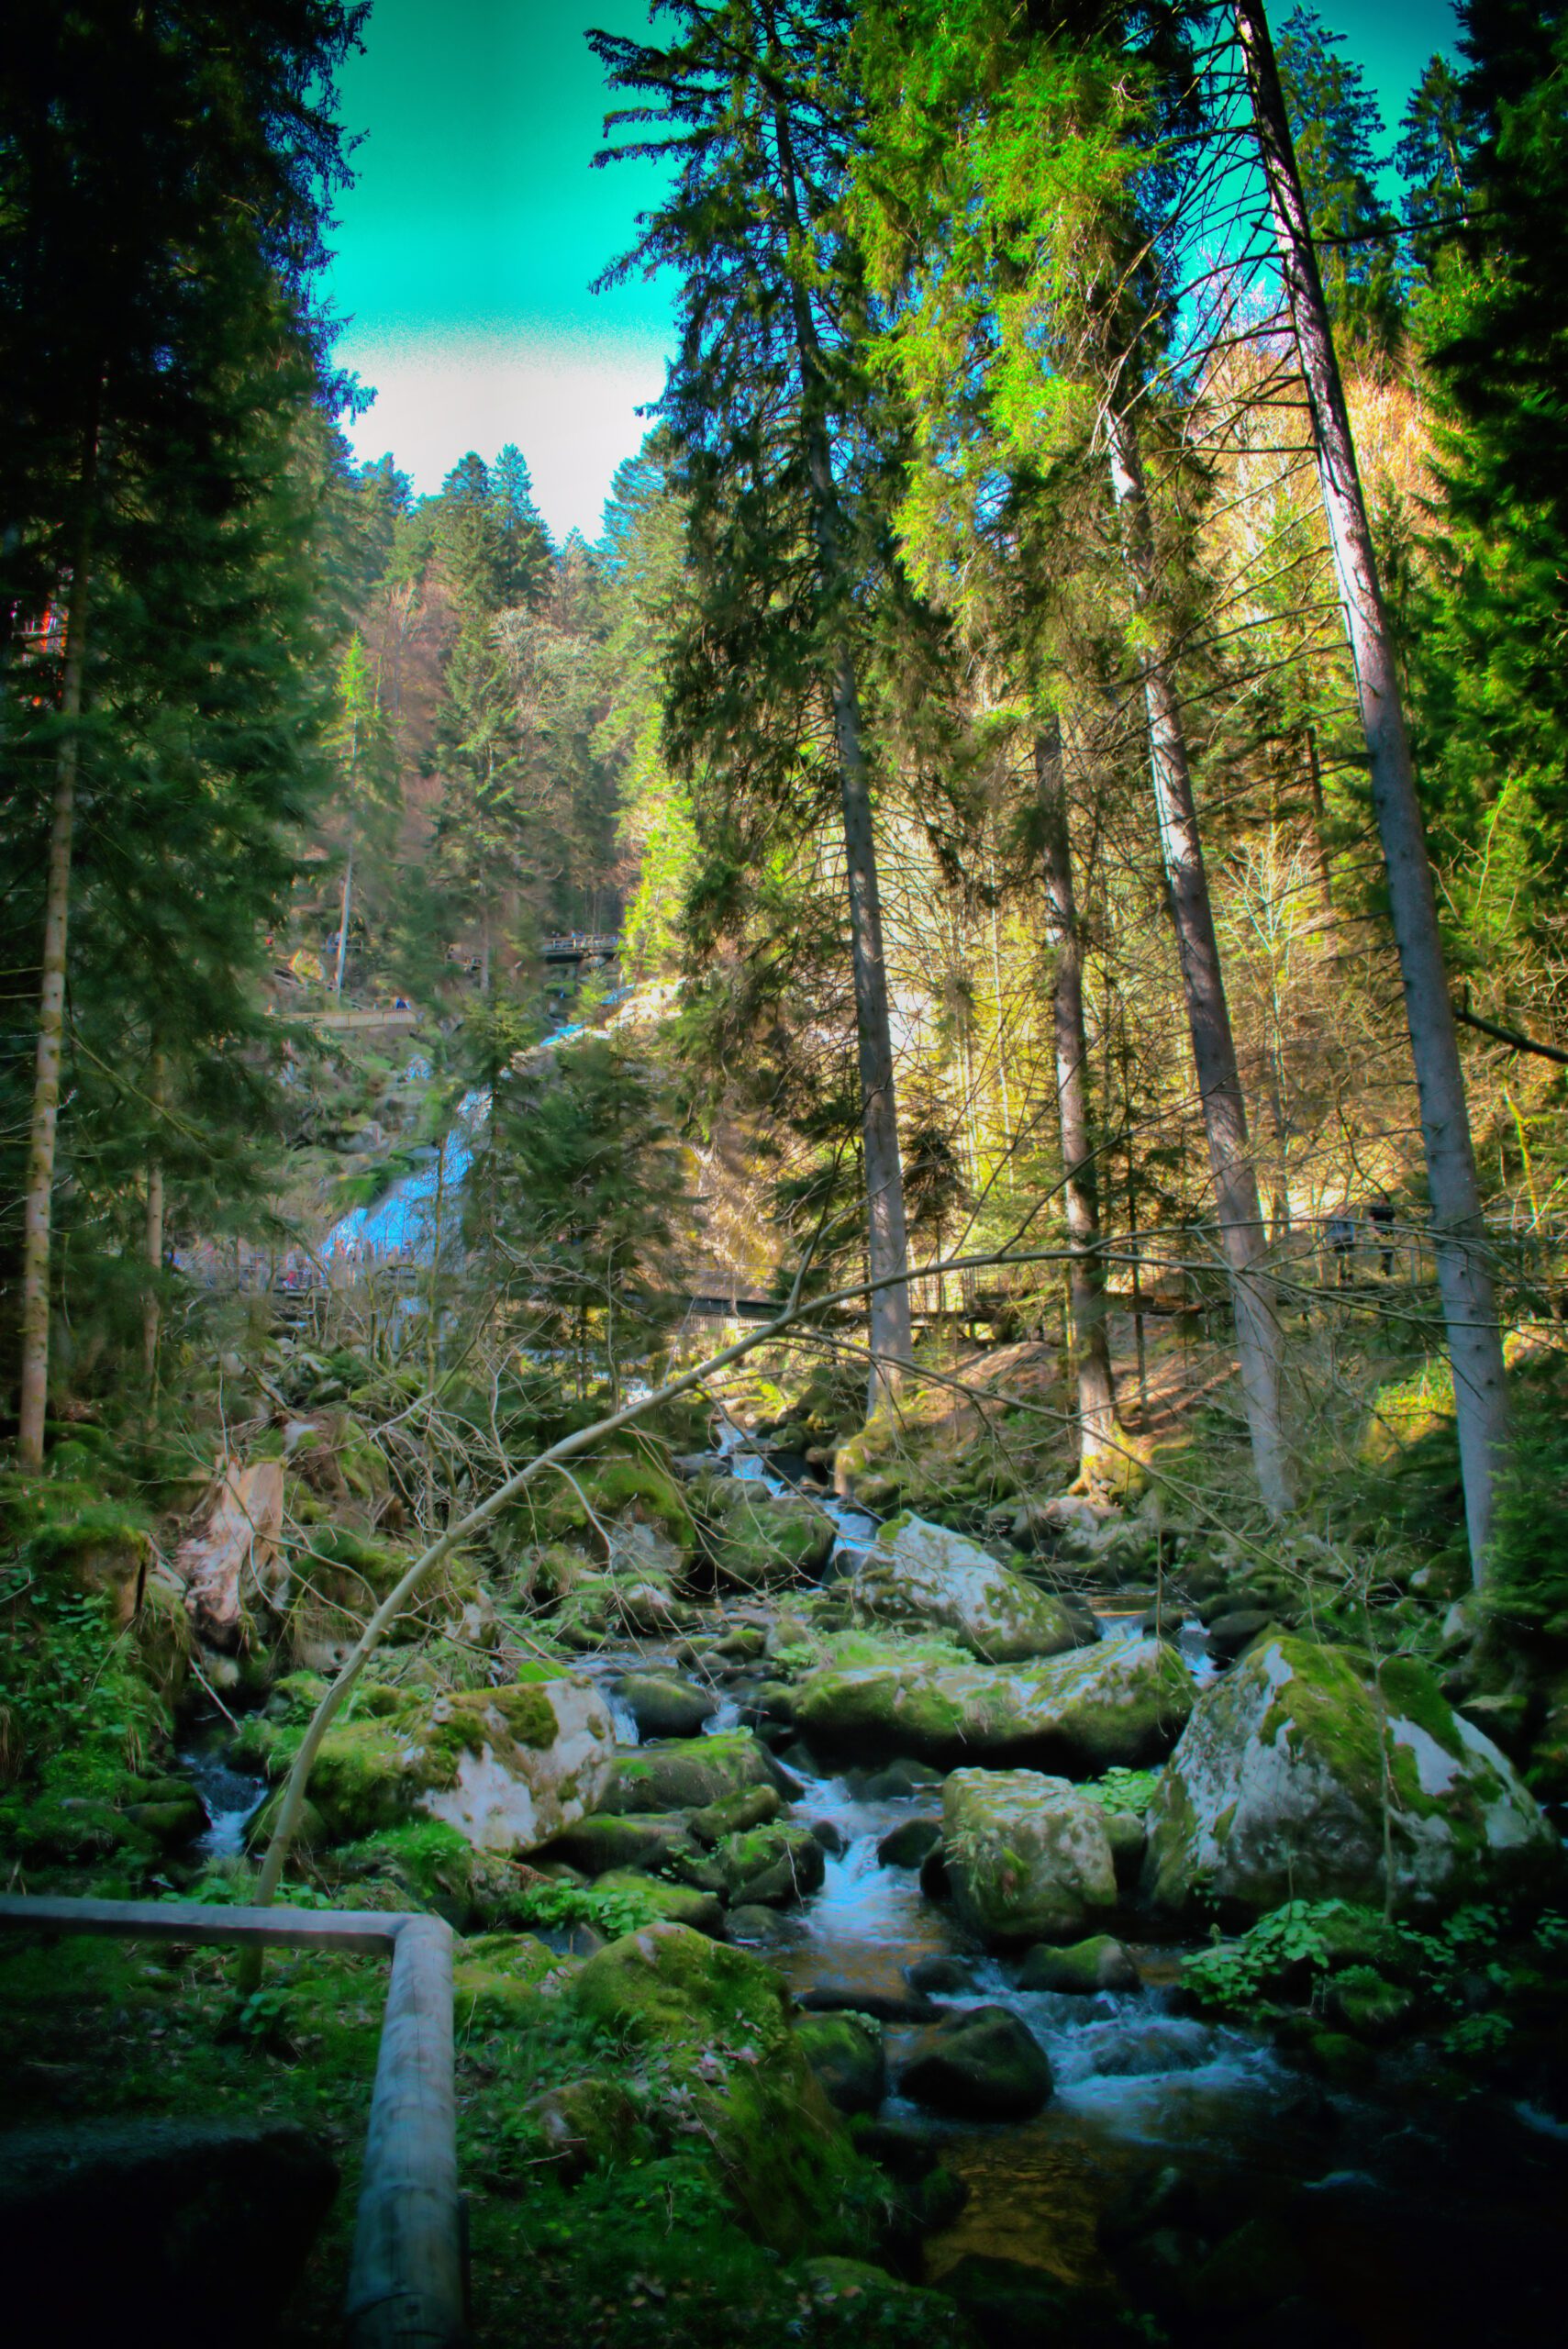 Ein Bach läuft durch den Wald (schwarz Wald)Die Steine sind vom Moss bewachsen. Es scheint die Sonne, dennoch ist es etwas dunkel durch den Wald.